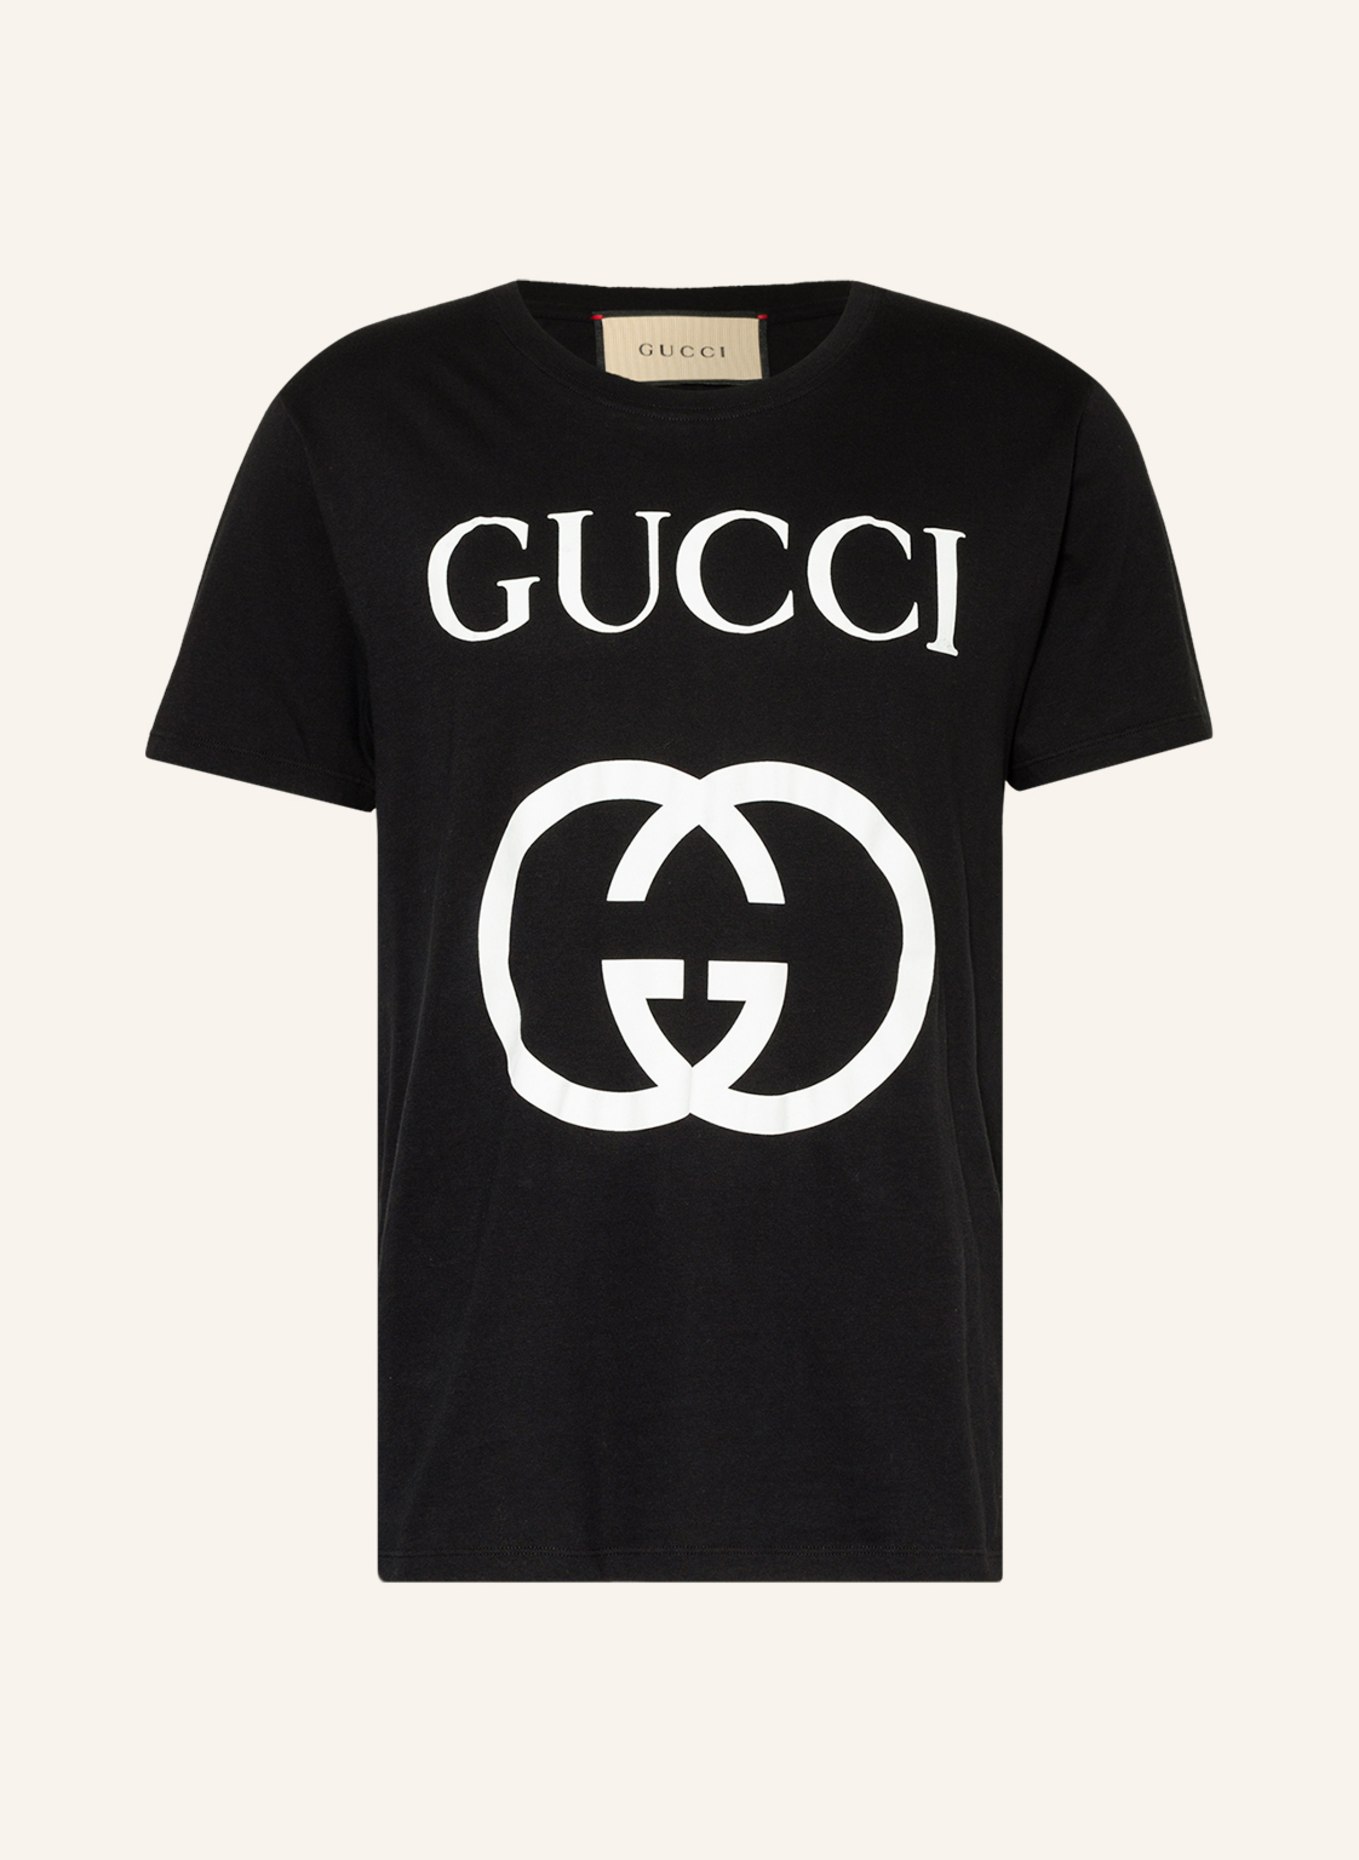 GUCCI T-shirt, Color: BLACK (Image 1)